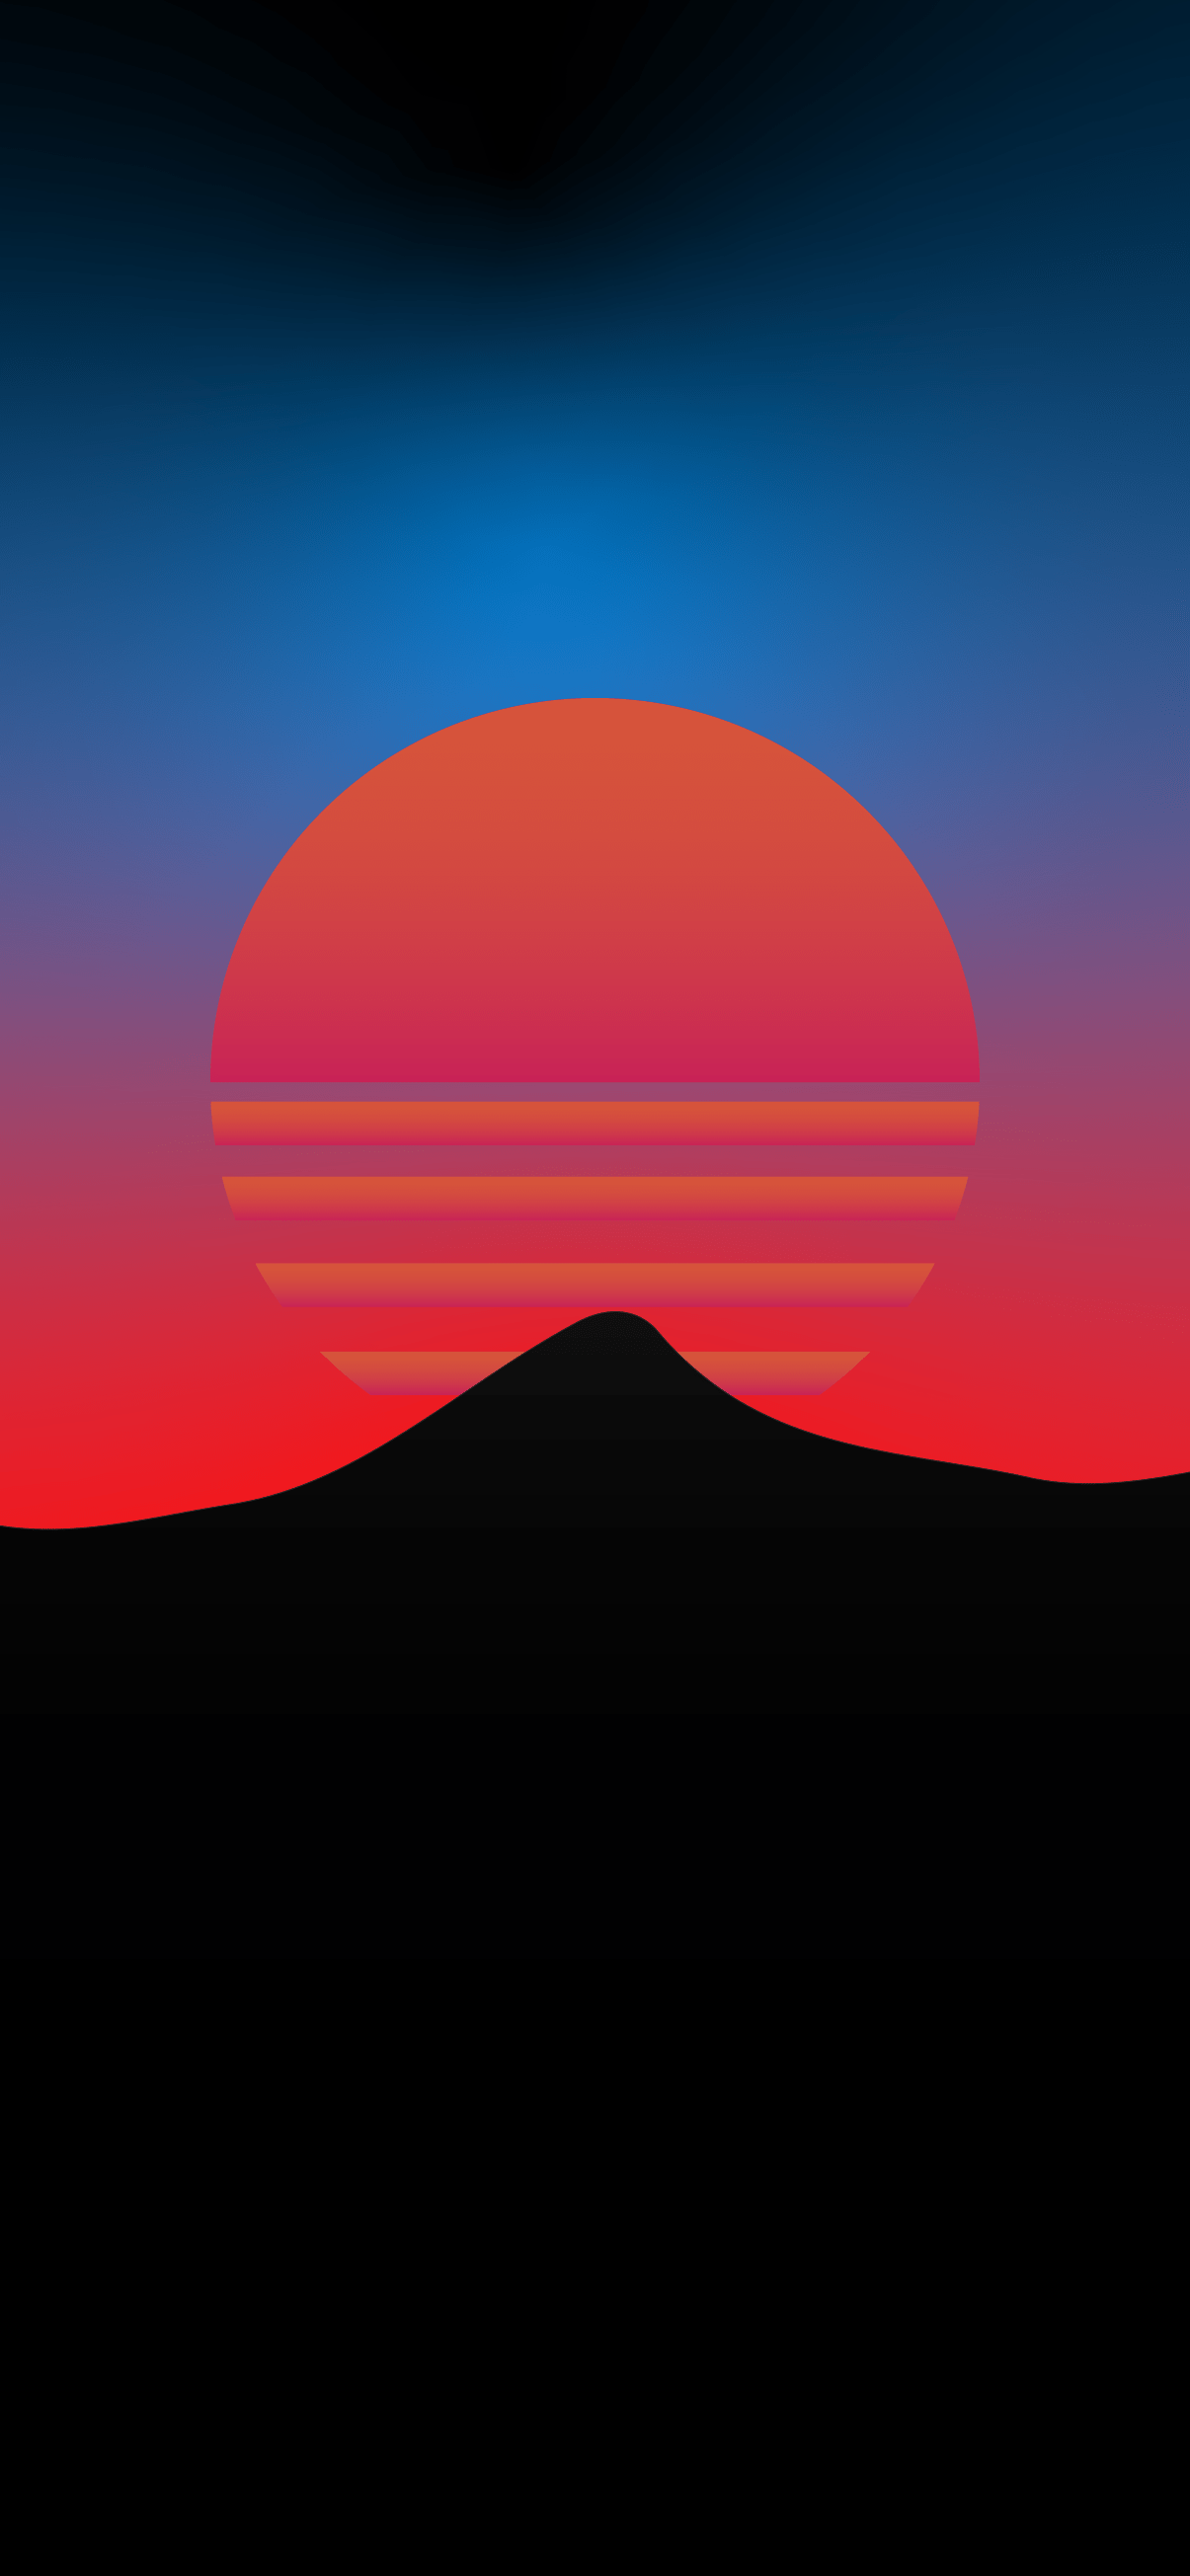 A sunset is shown on the horizon - Minimalist